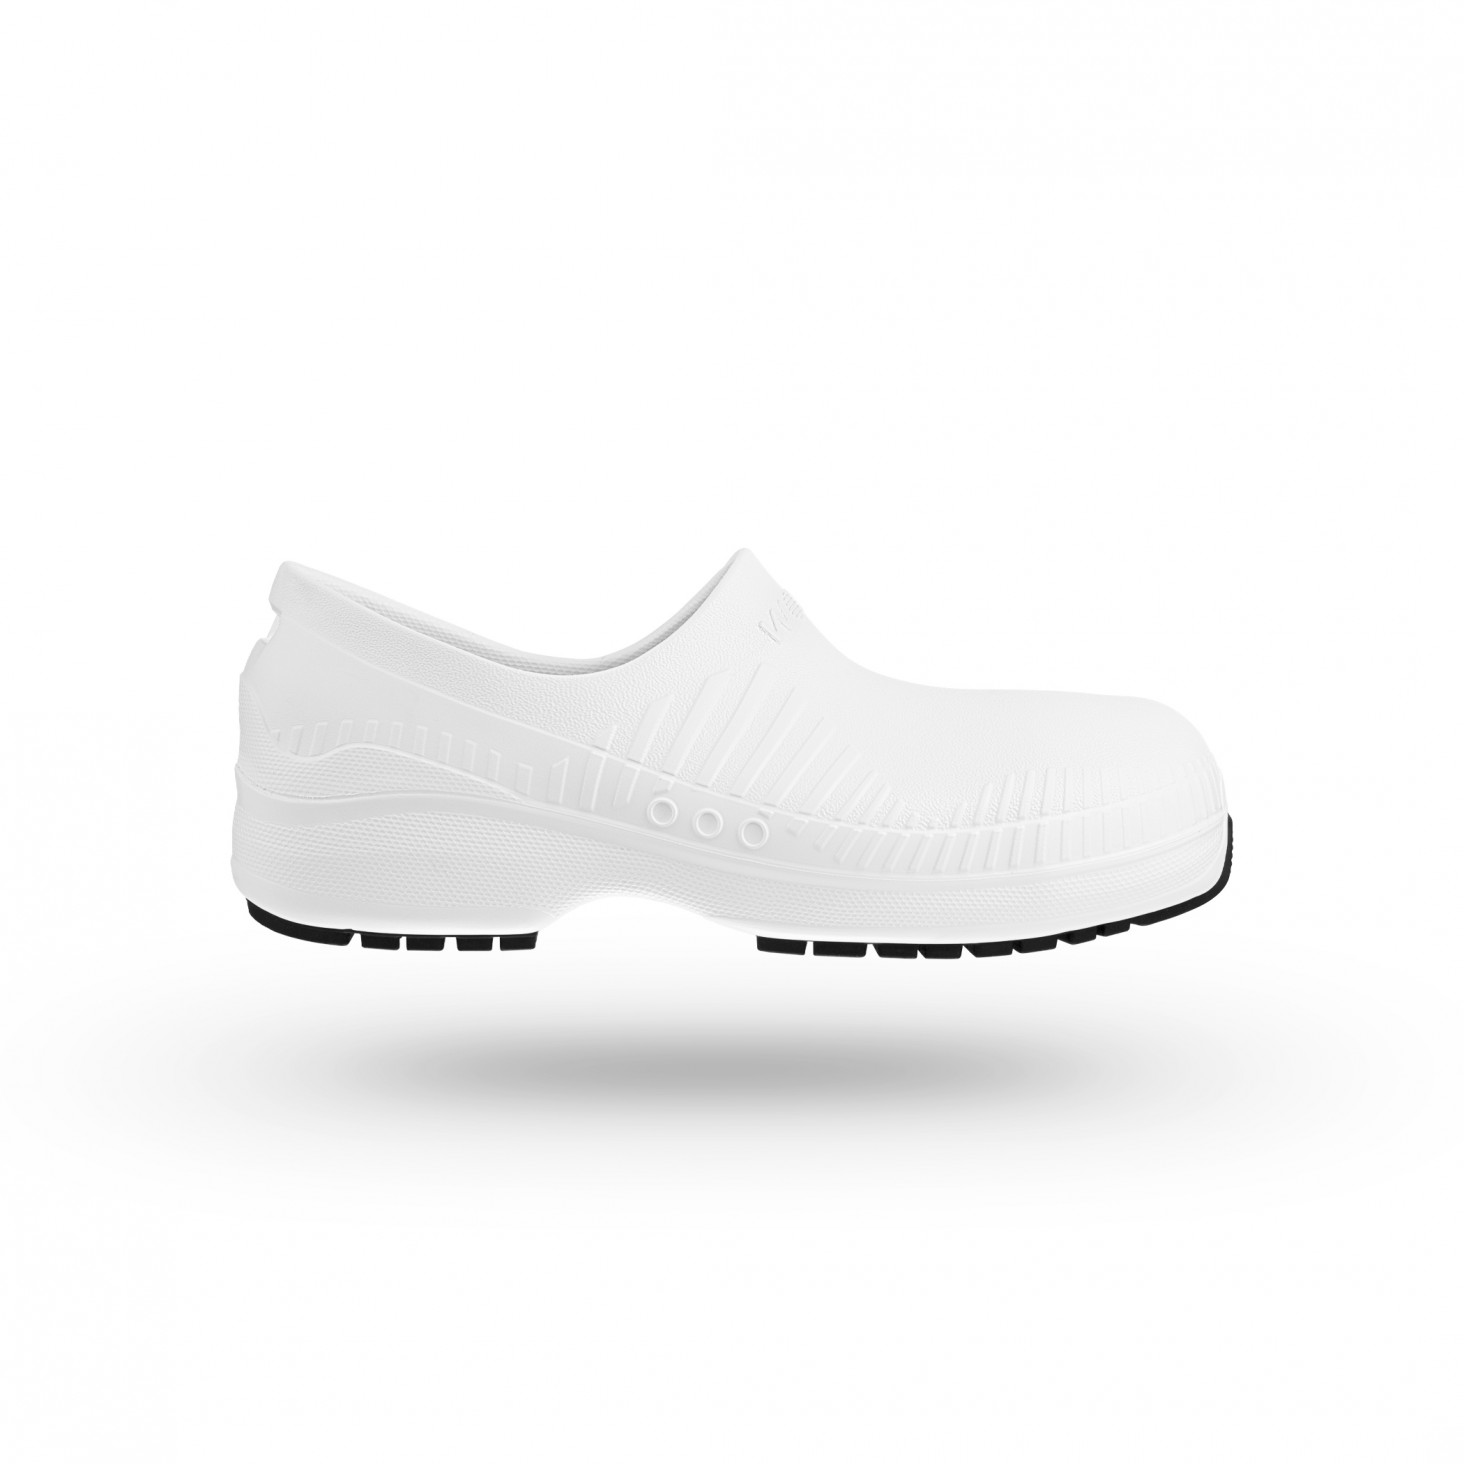 WOCK Sapatos de Segurança Leves com proteção brancos SECURLITE 01 - 10017636